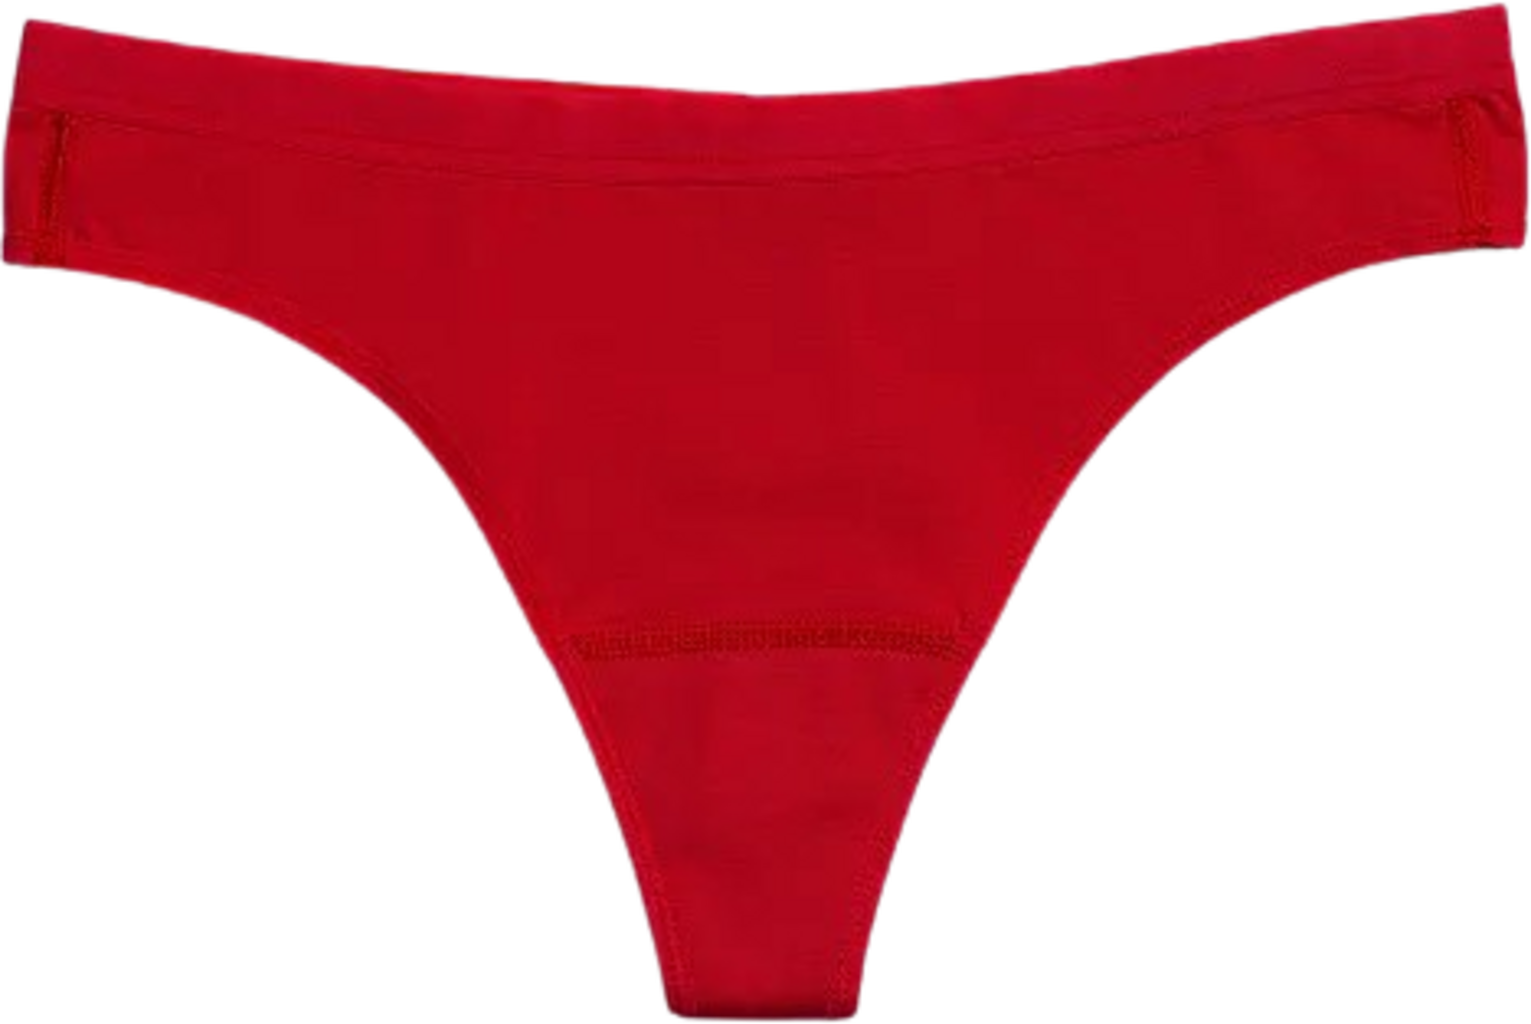 Mars Womens Period Underwear Teen Period Panties Thong